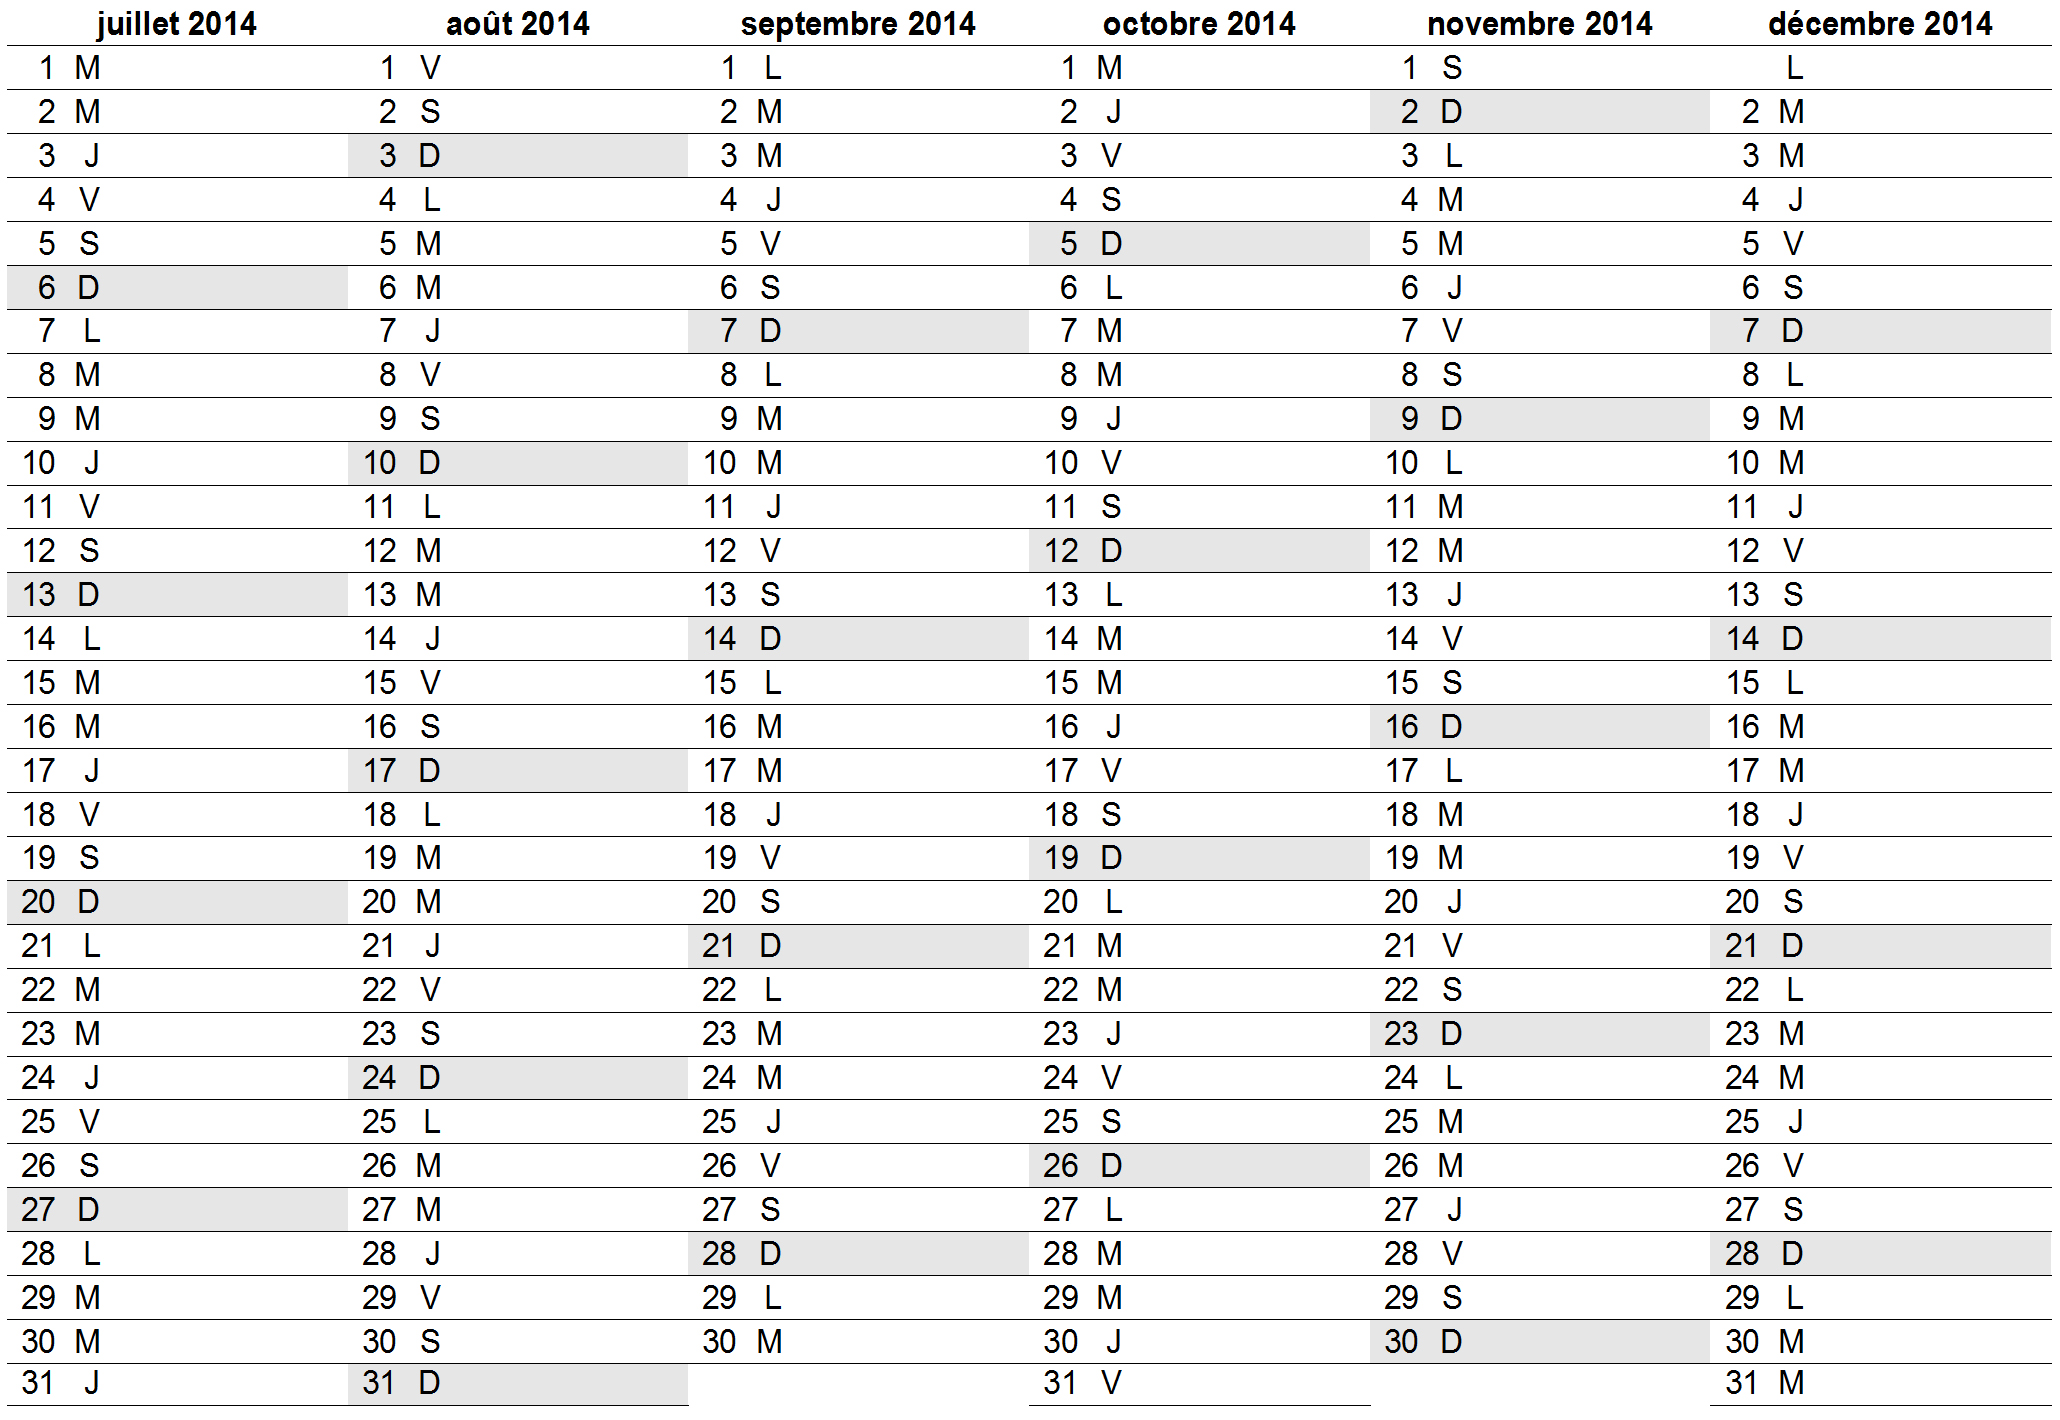 Calendrier 2014 horizontal deuxième semestre